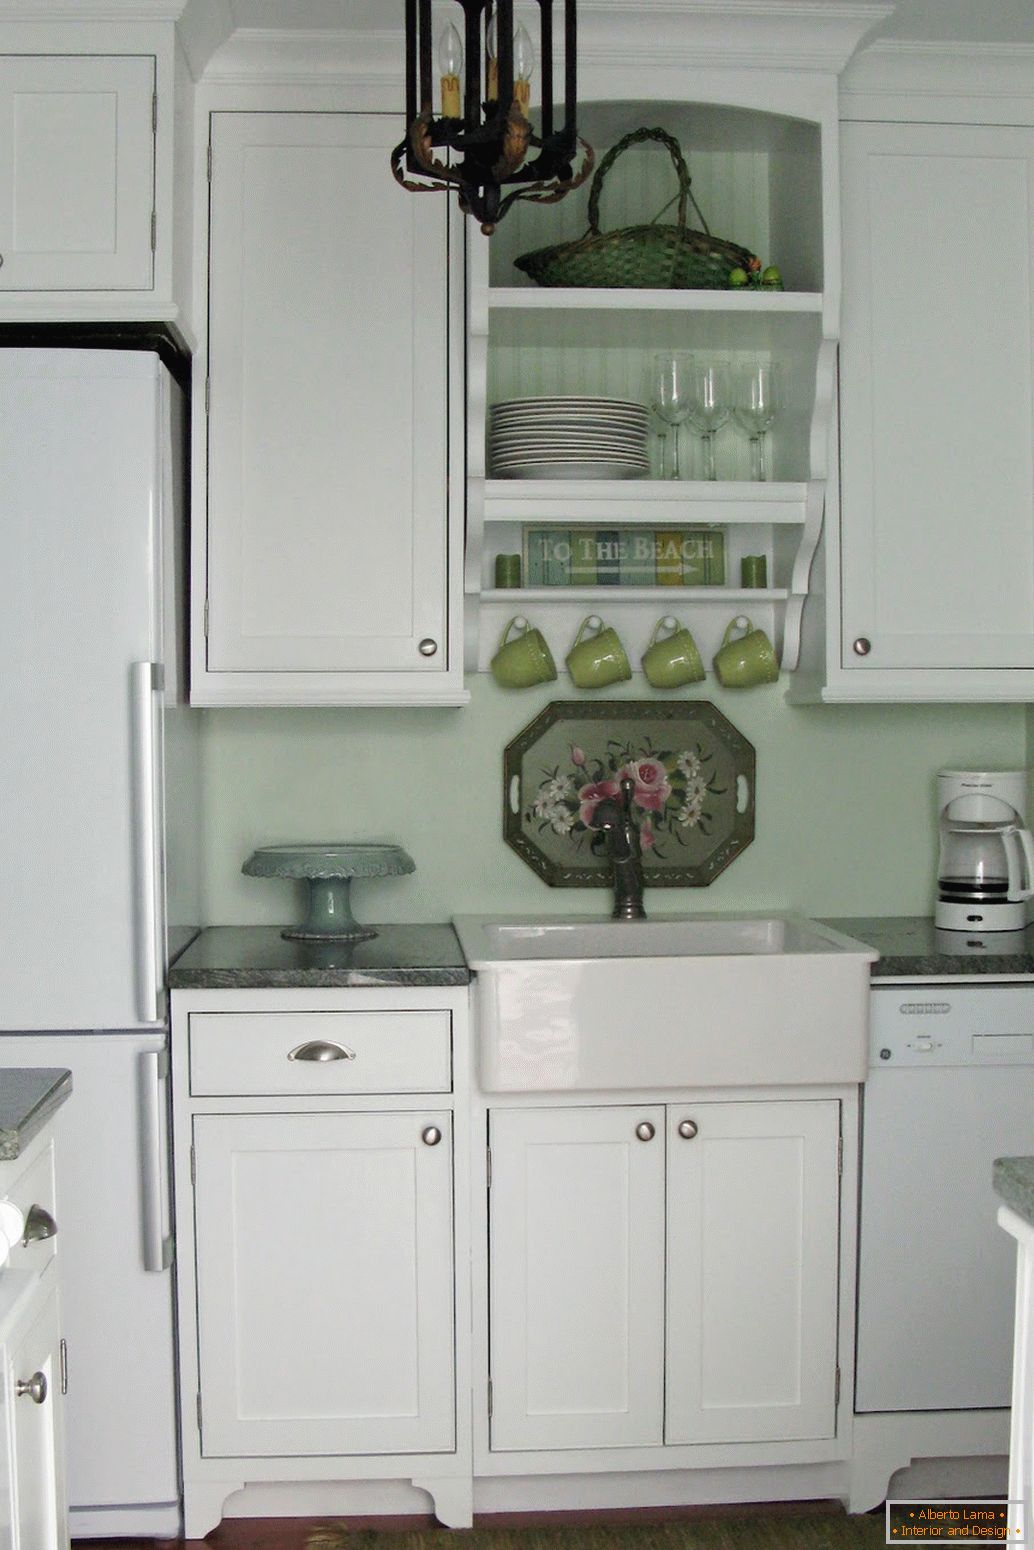 Design de interiores de uma pequena cozinha